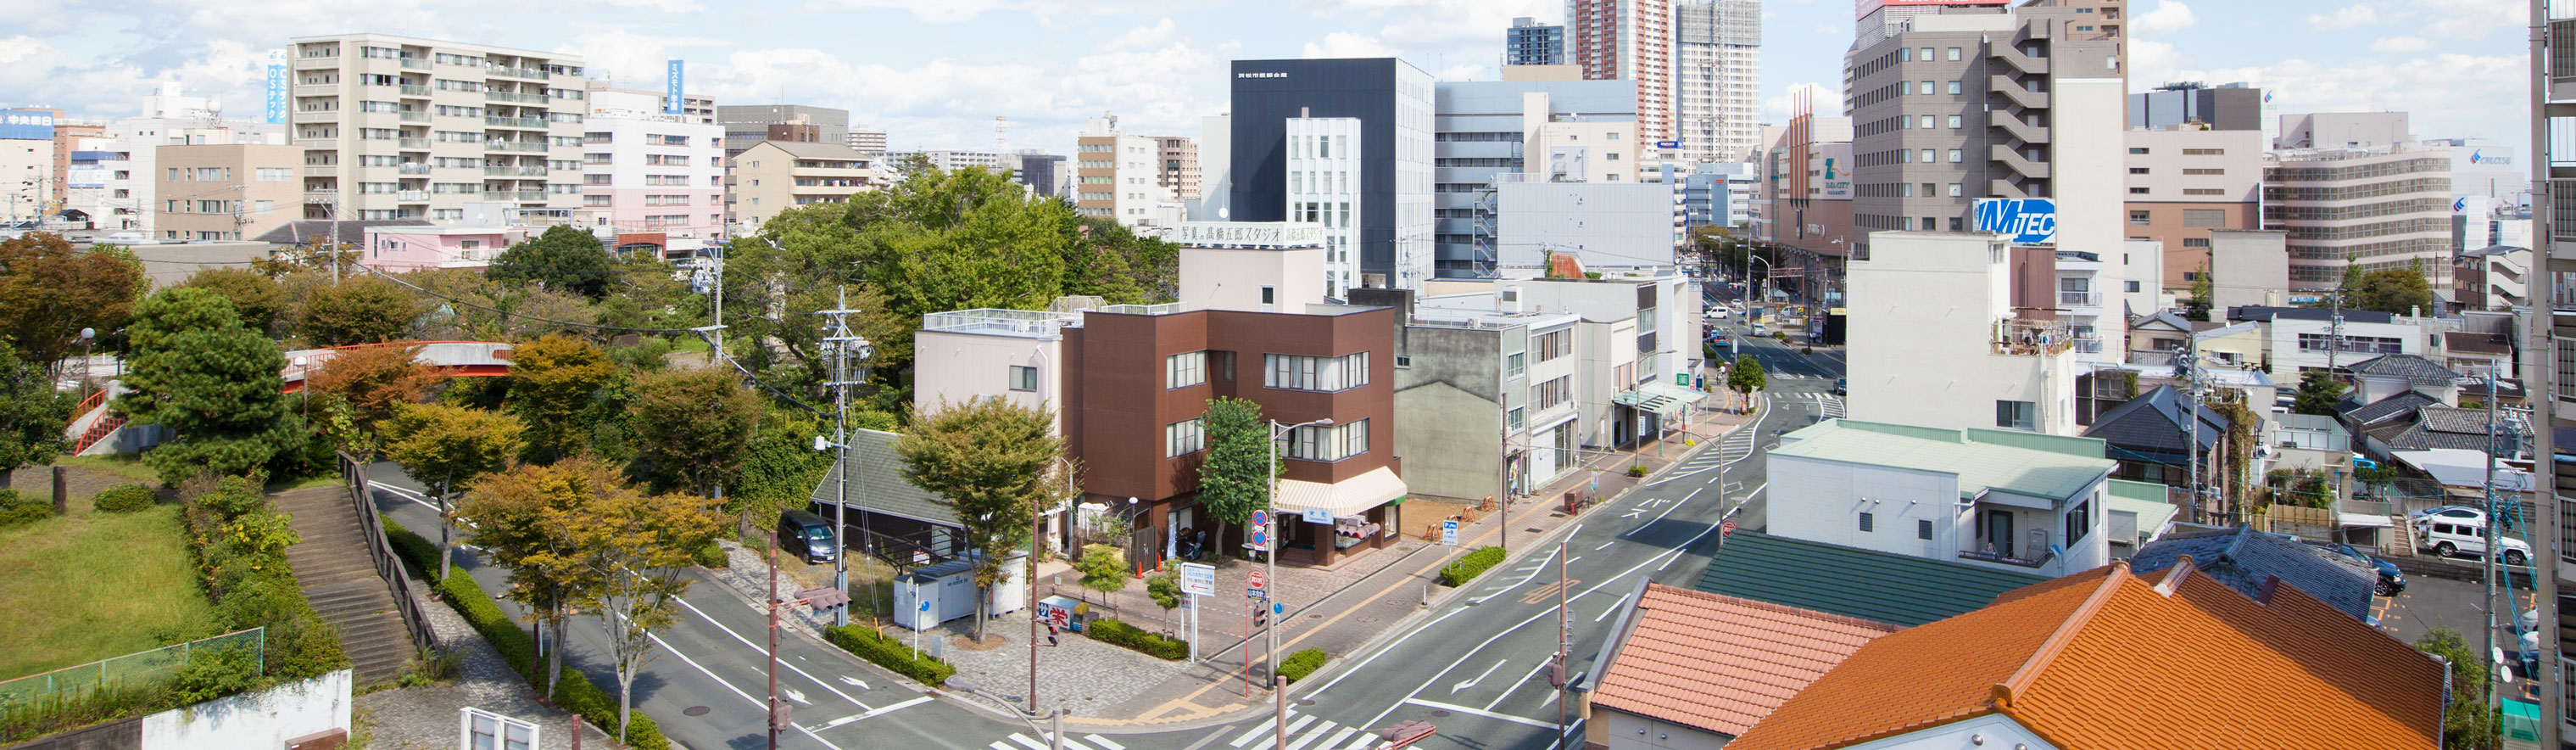 高橋五郎スタジオの外観と浜松市中区栄町の町並み